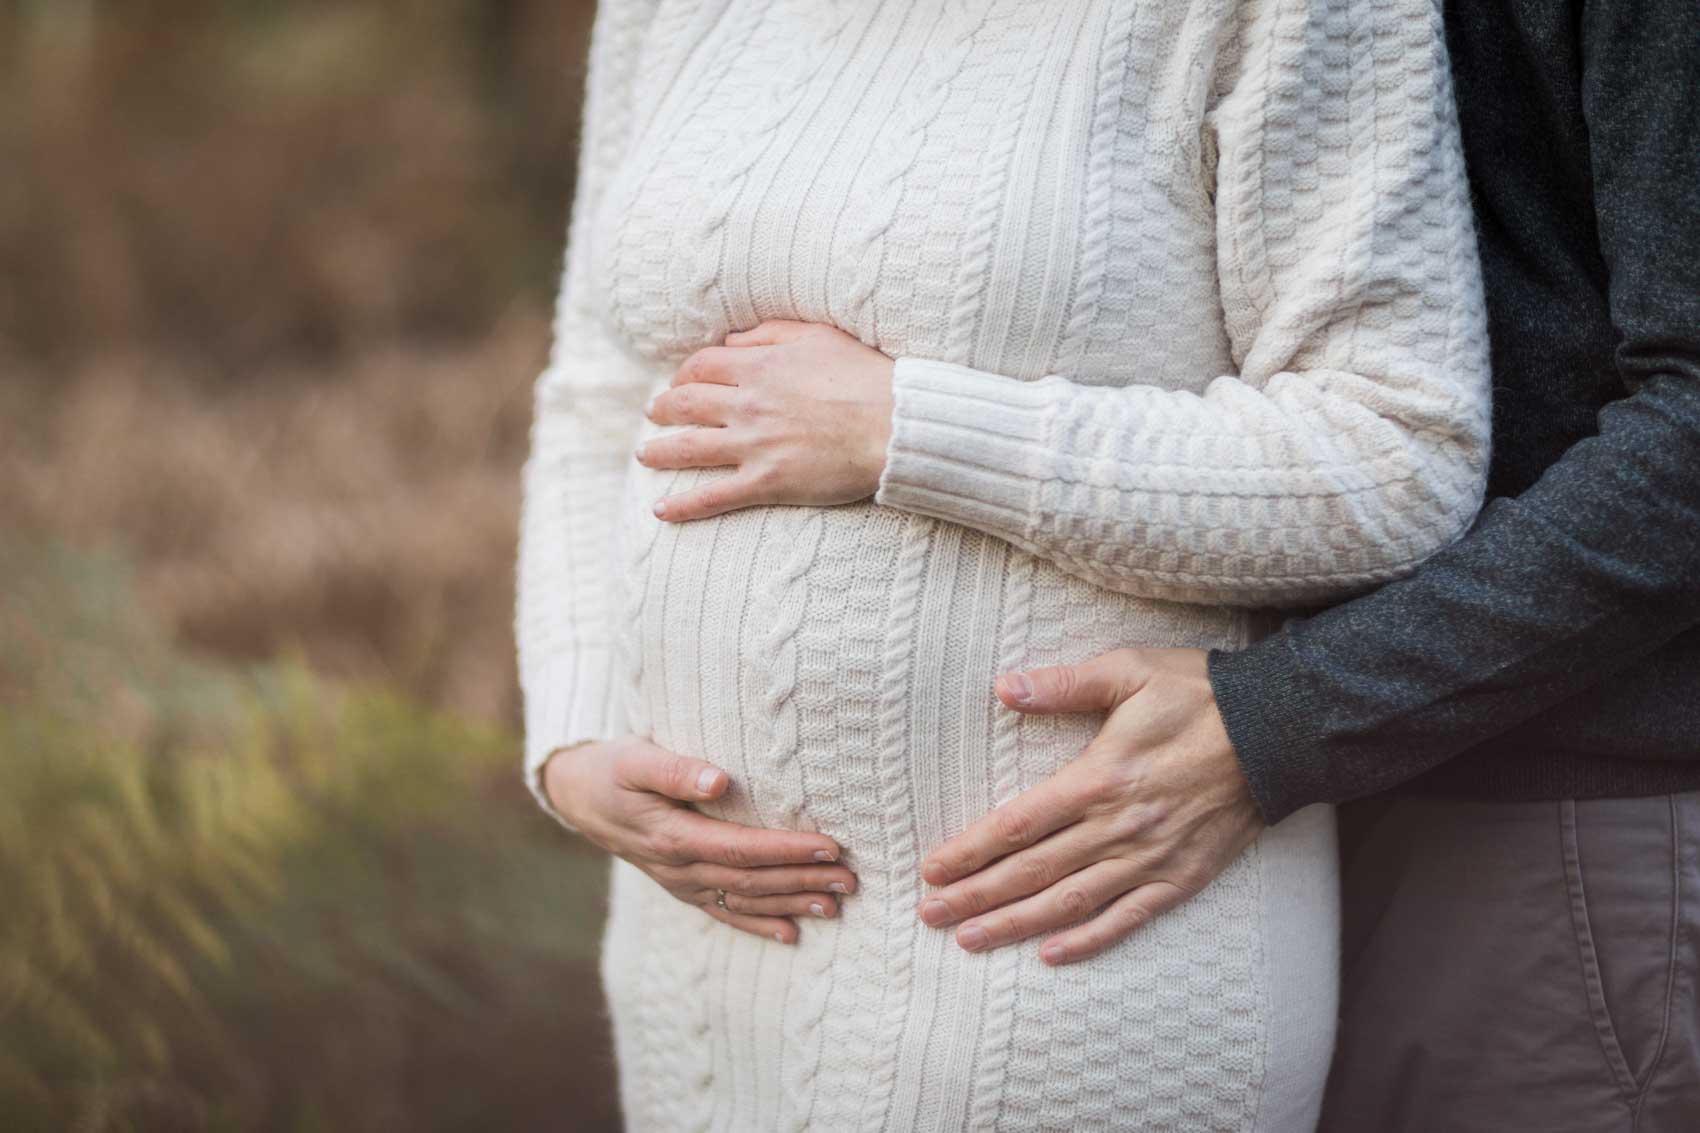 Detailfoto vom Bauch einer schwangeren Frau in einem wollweißen Strickkleid mit Zopfmuster. Die Frau hat beide Hände auf den Bauch gelegt, der Mann hat ebenfalls eine Hand auf dem Bauch seiner Frau